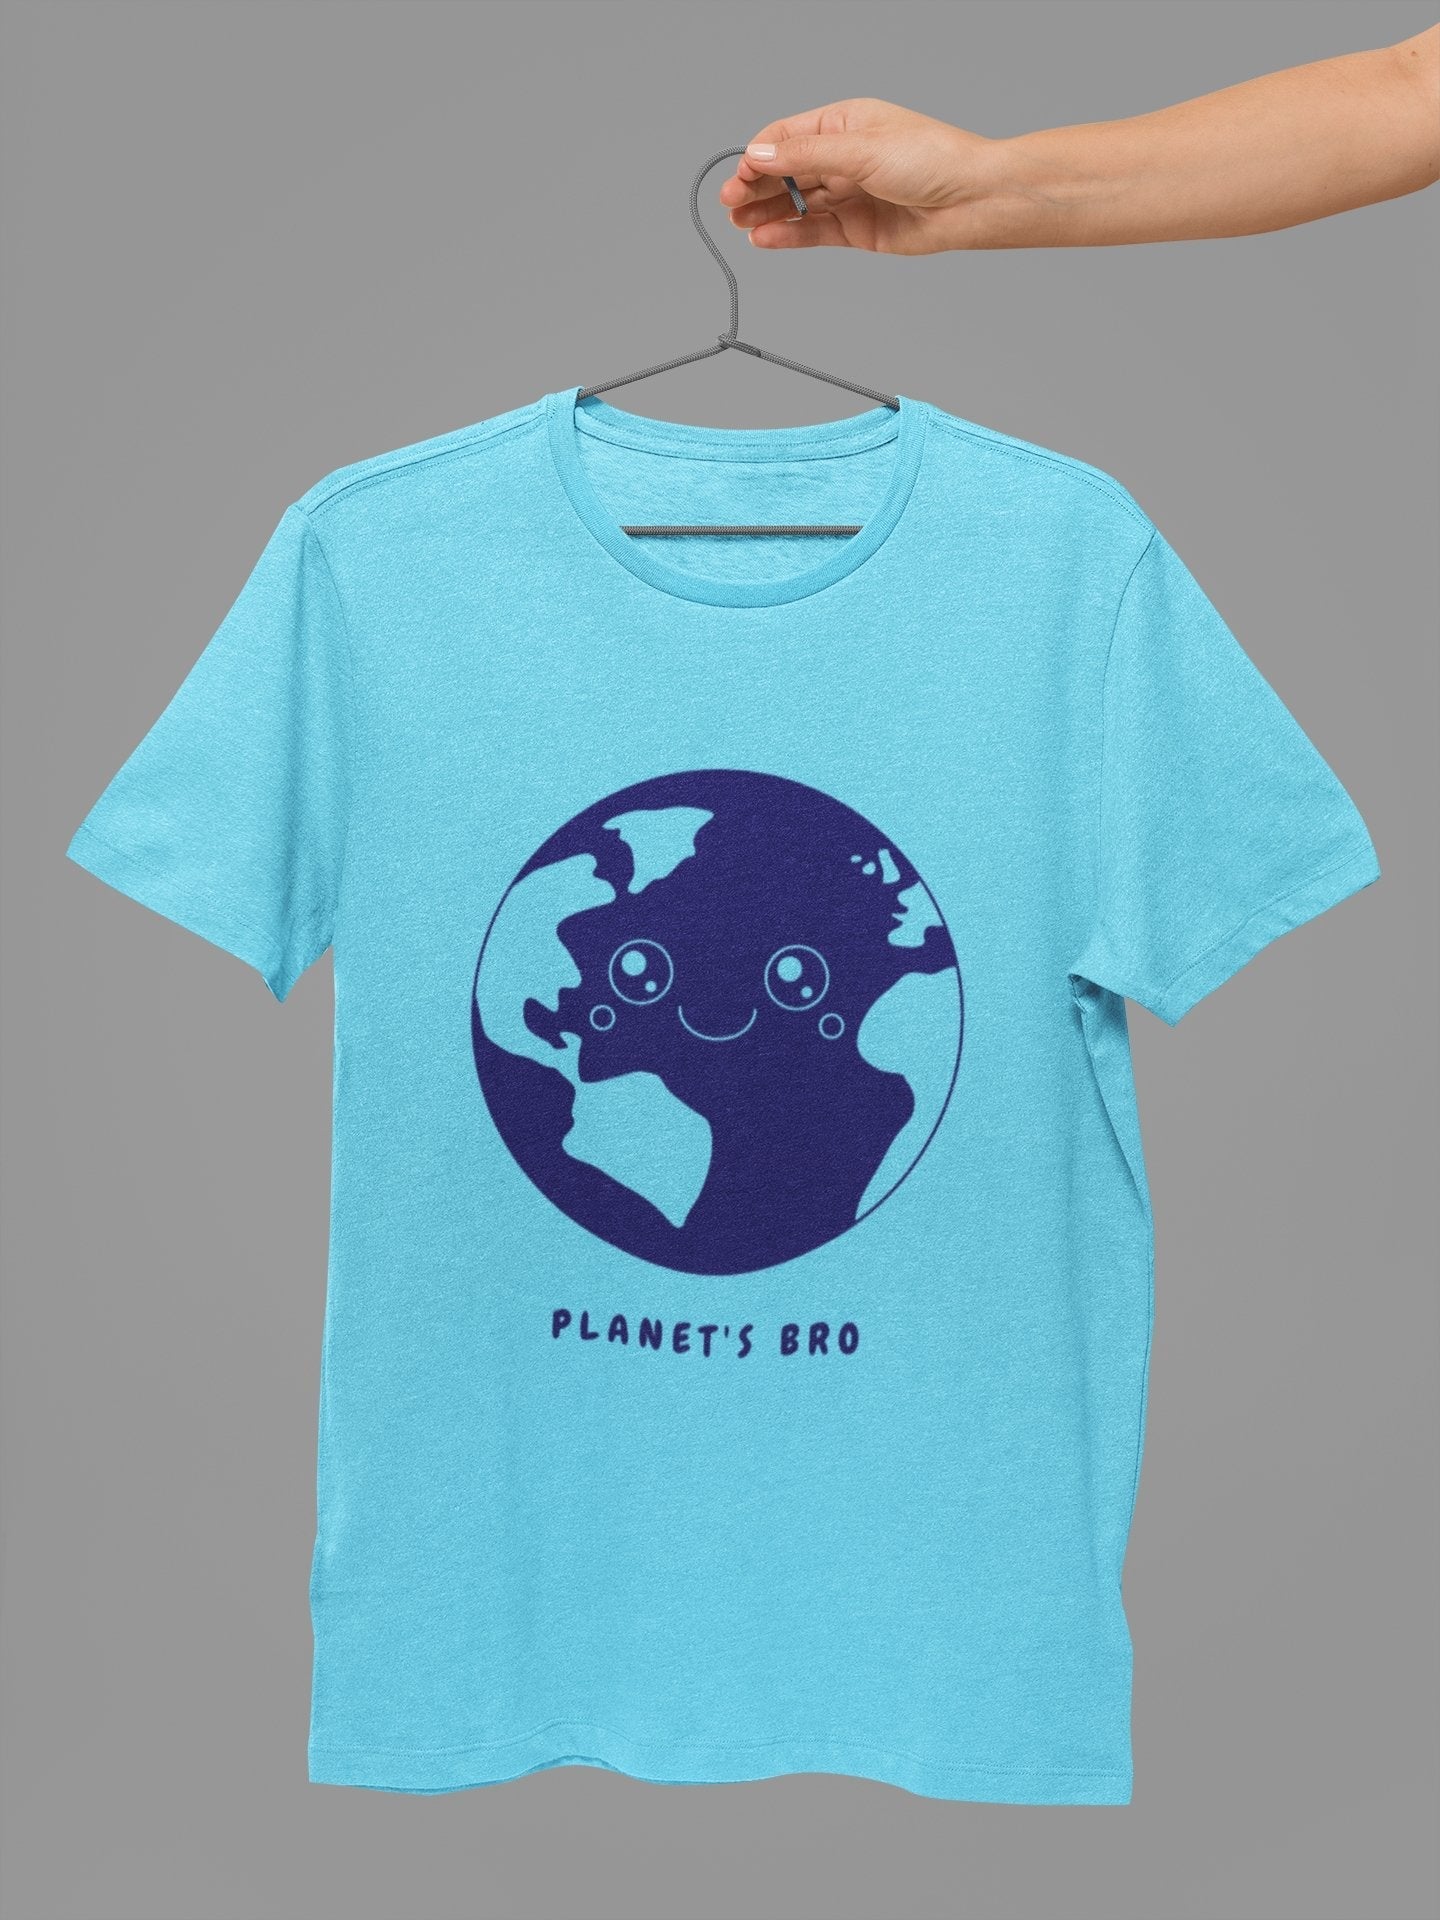 Planet's Bro Environment T-Shirt - Insane Tees